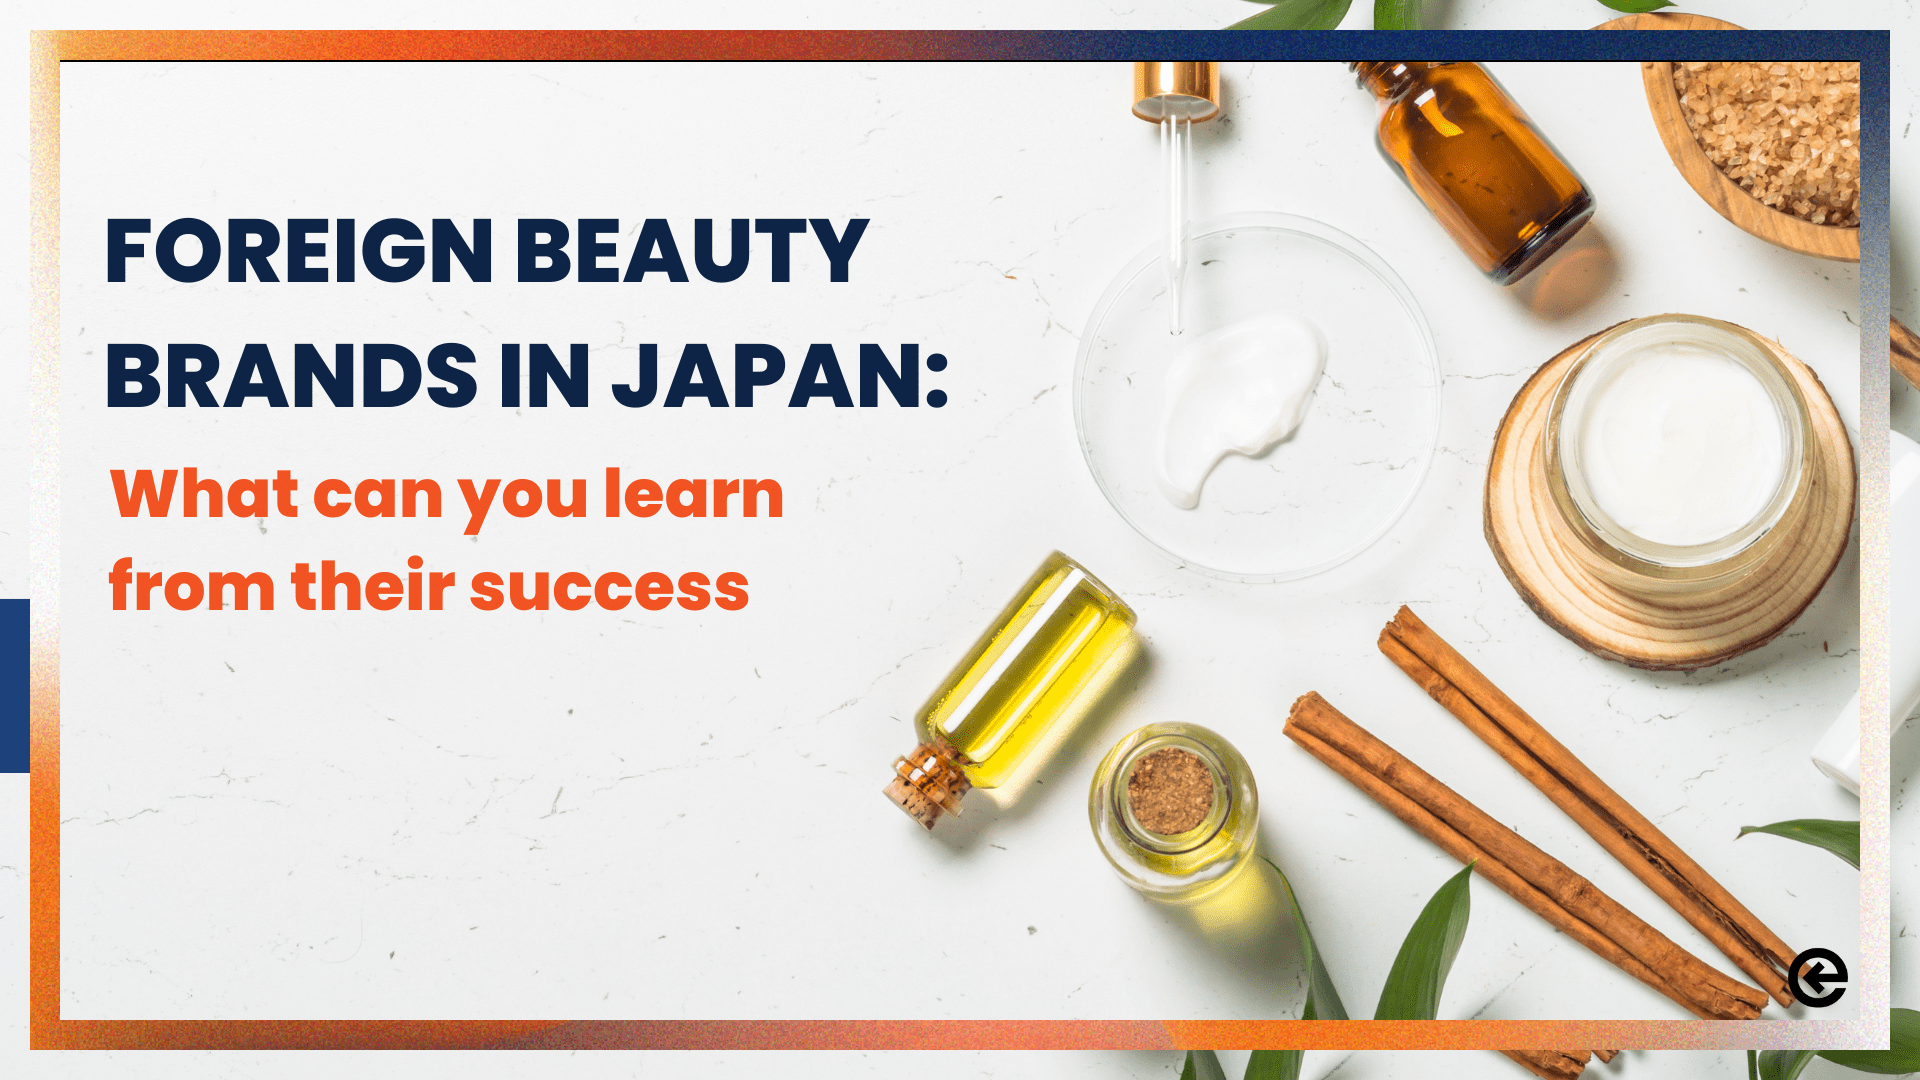 外国美容品牌在日本：你可以从他们的成功中学到什么 